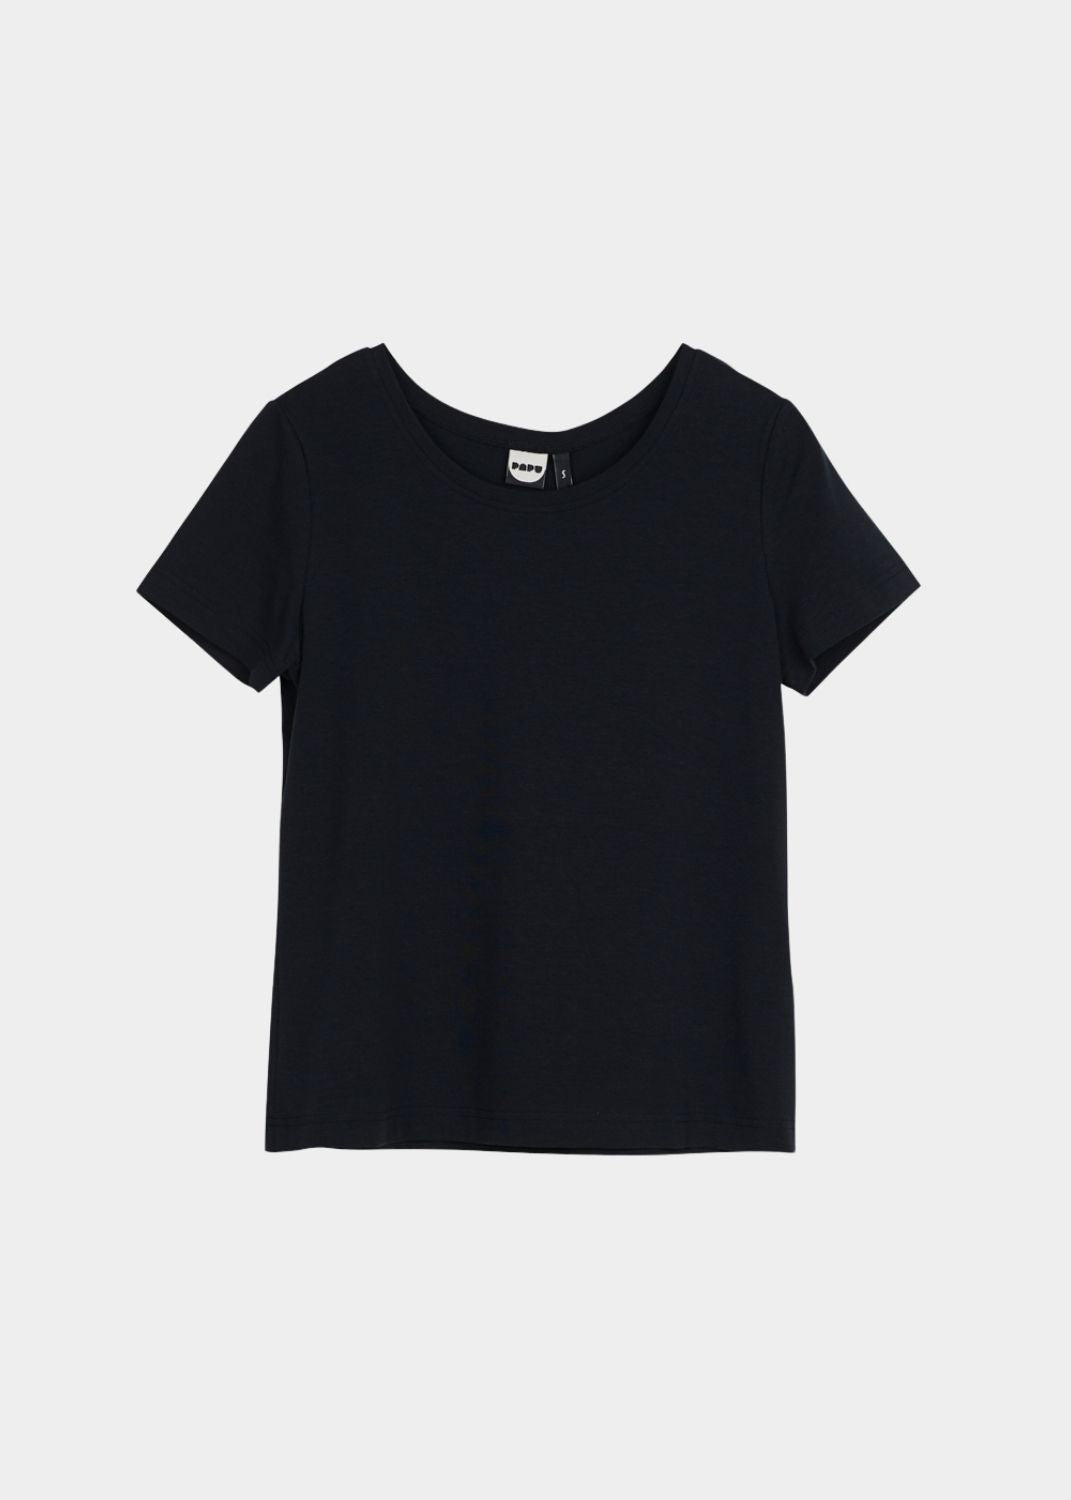 T-Shirt Smoky Black